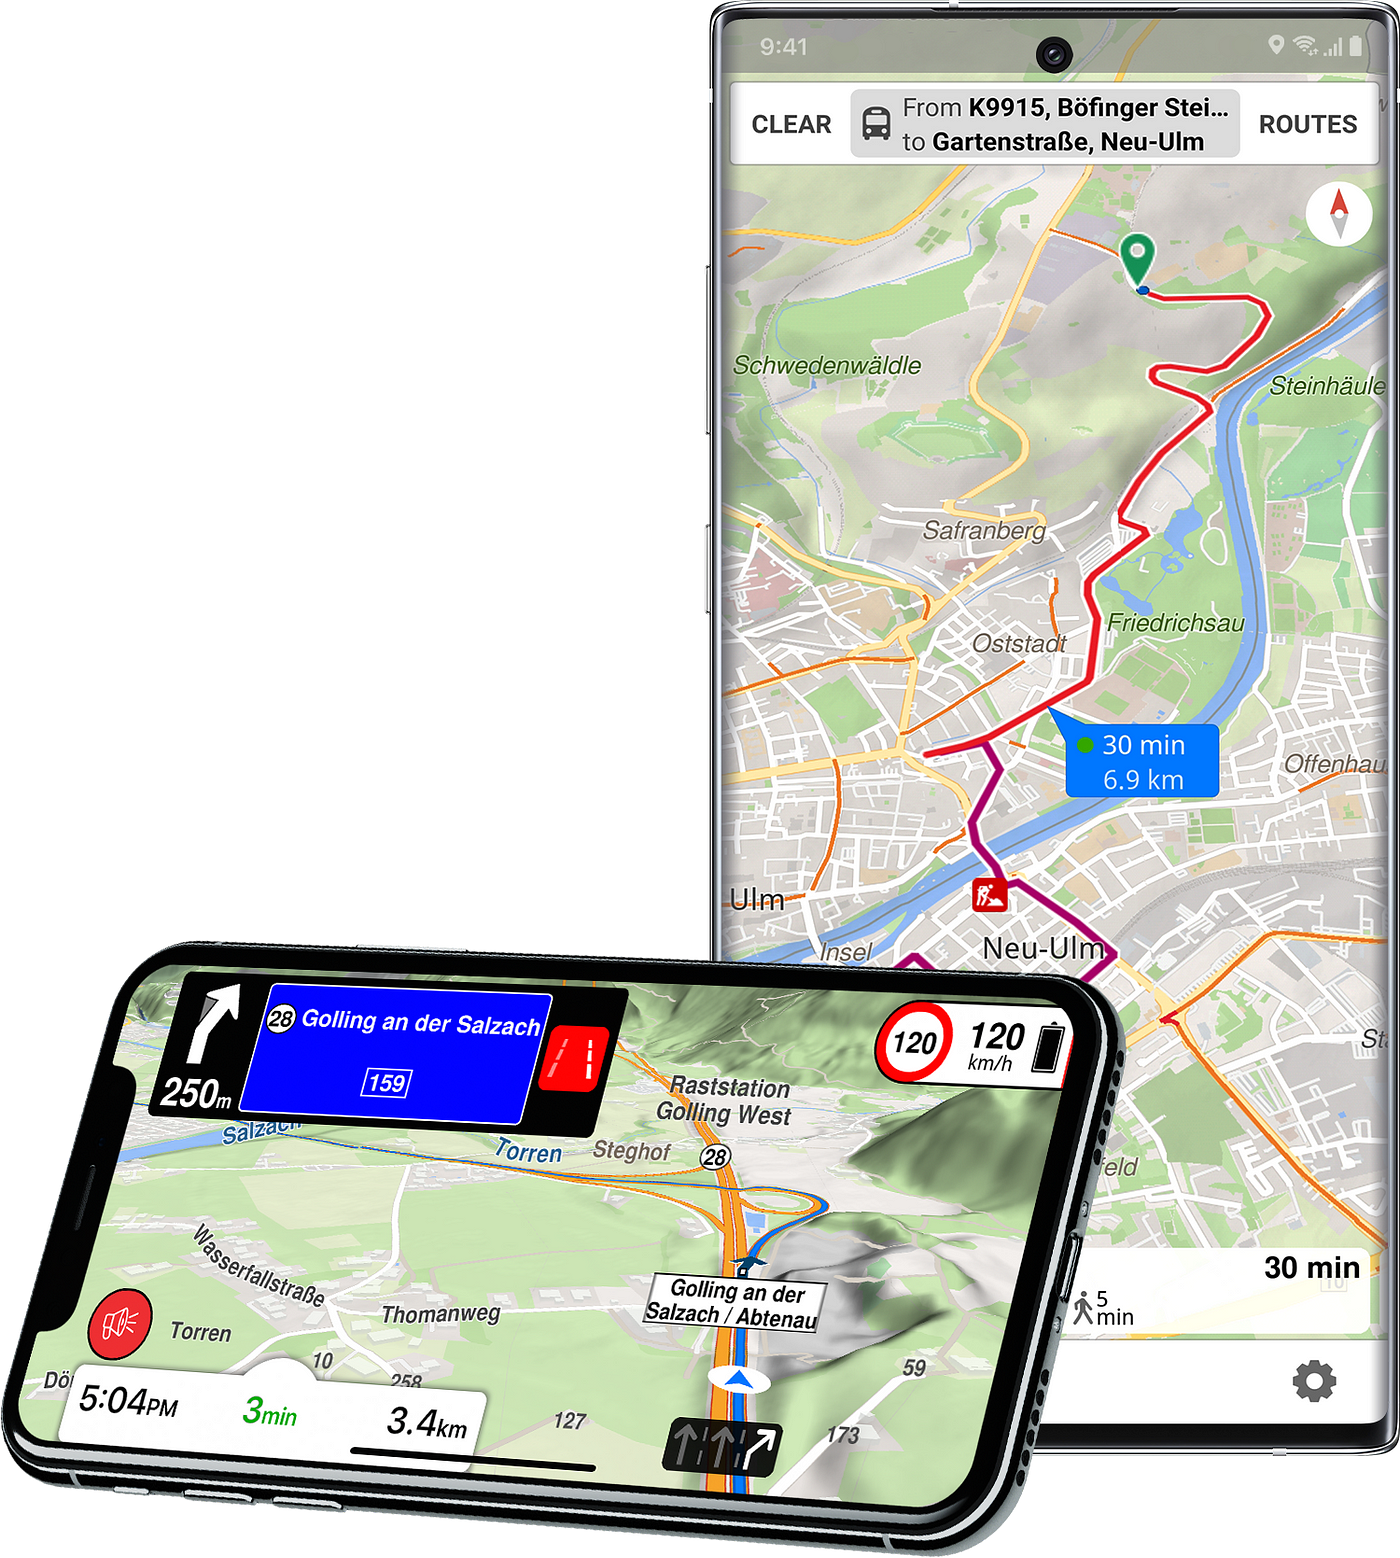 Best offline car navigation app for Android | by Kirill Strelkov | Medium